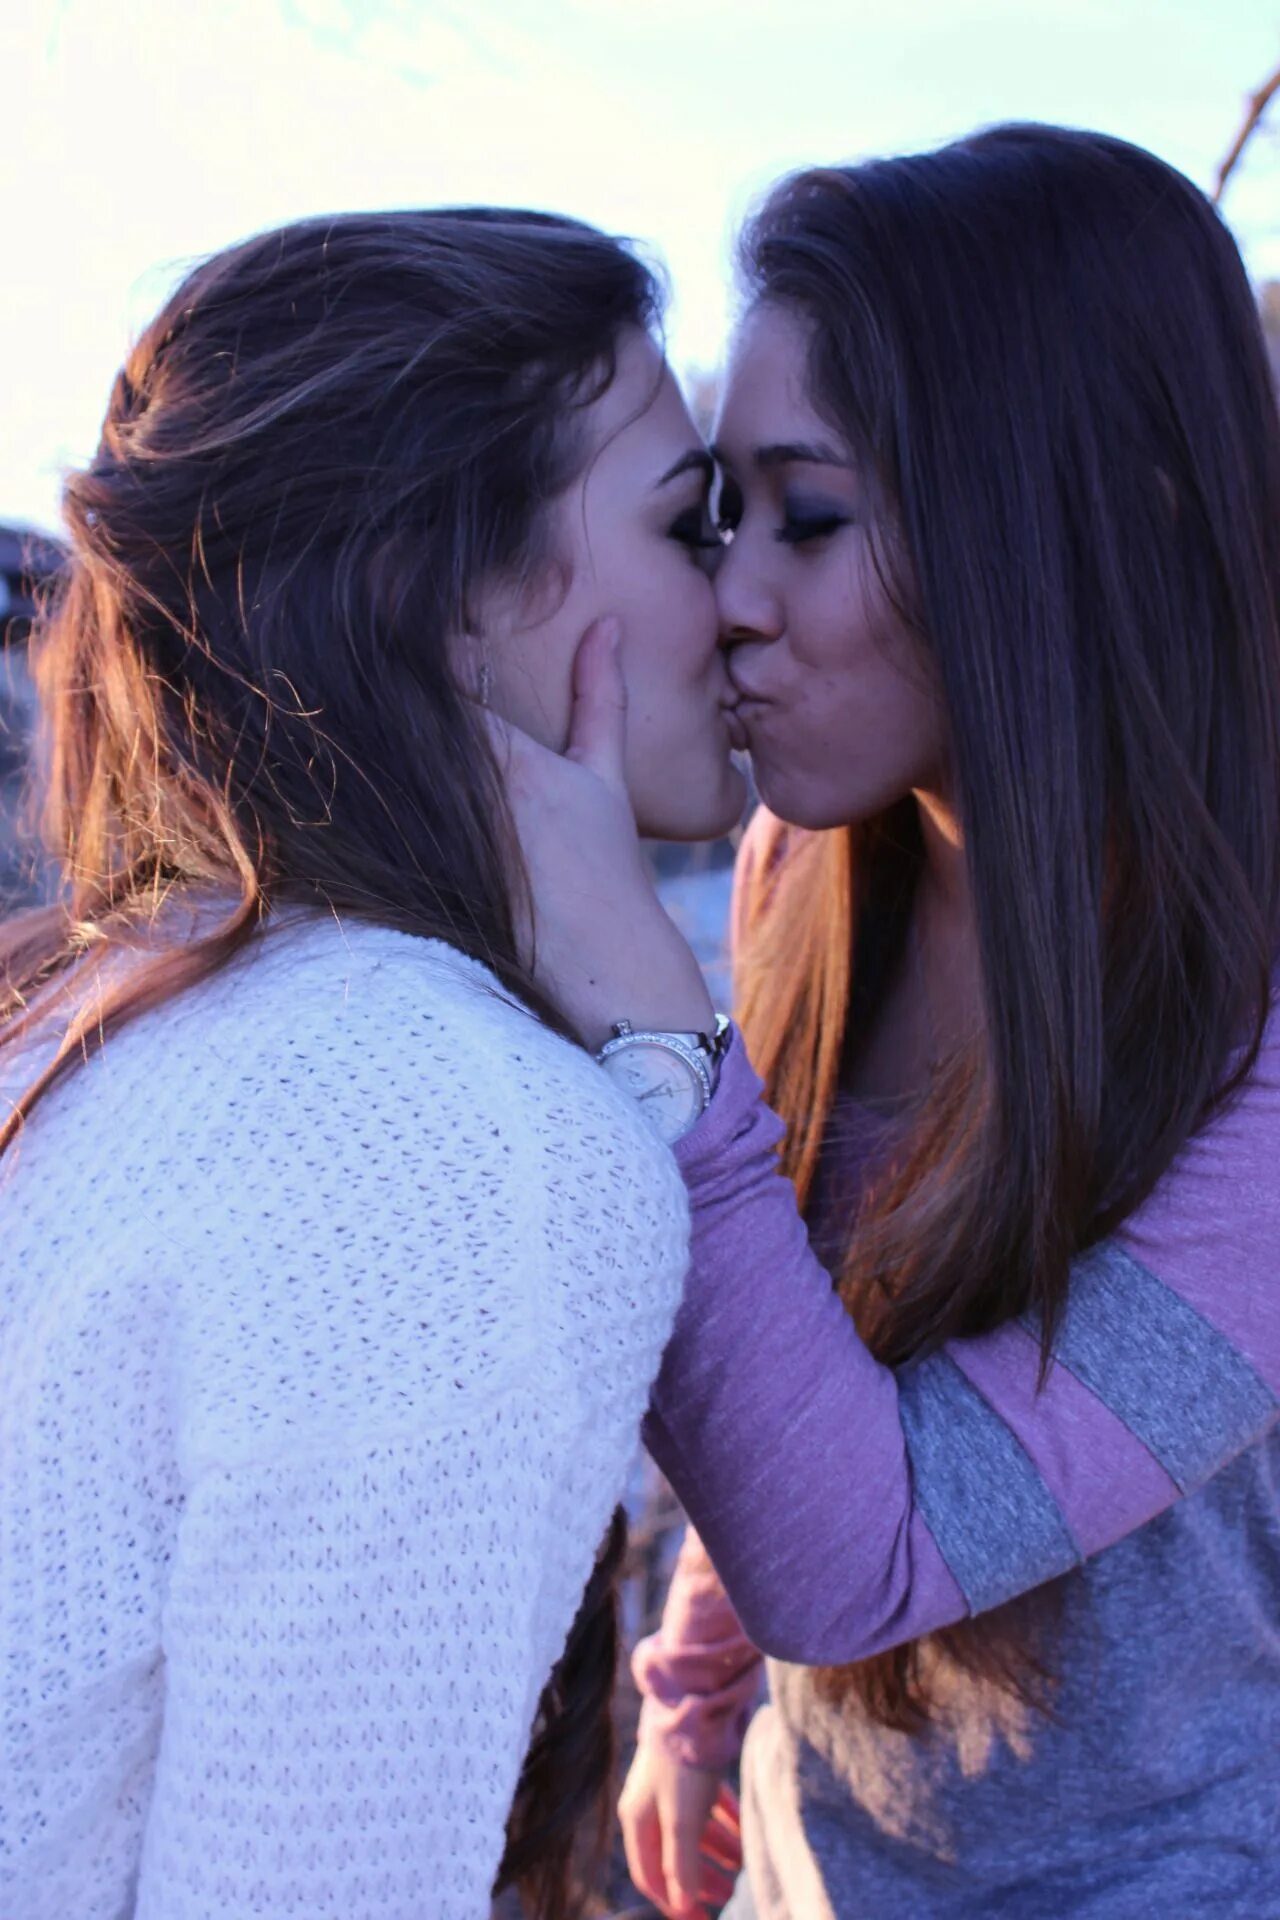 Moms girl lesbian. Two girlfriends Wallpaper. Pic lesbian Lebanese. Engage Kiss. Katrin ko lesbian photo.